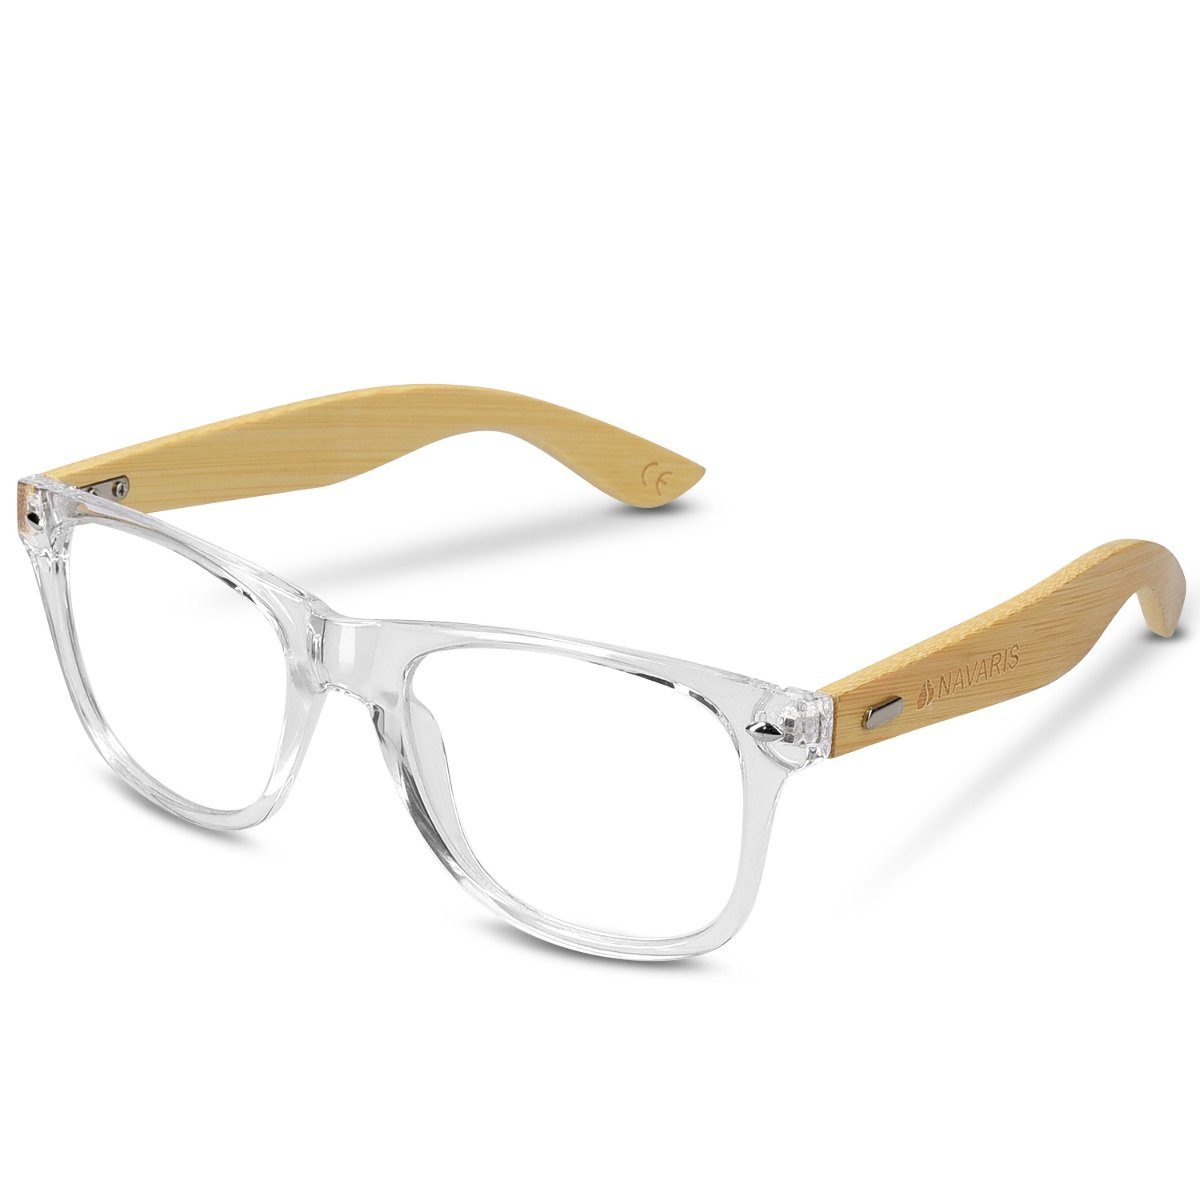 Navaris Brille, Retro Brille ohne Sehstärke - Damen Herren 50er Nerd Brille  - Anti Blaulicht Computer Nerdbrille ohne Stärke mit Bambus Bügeln